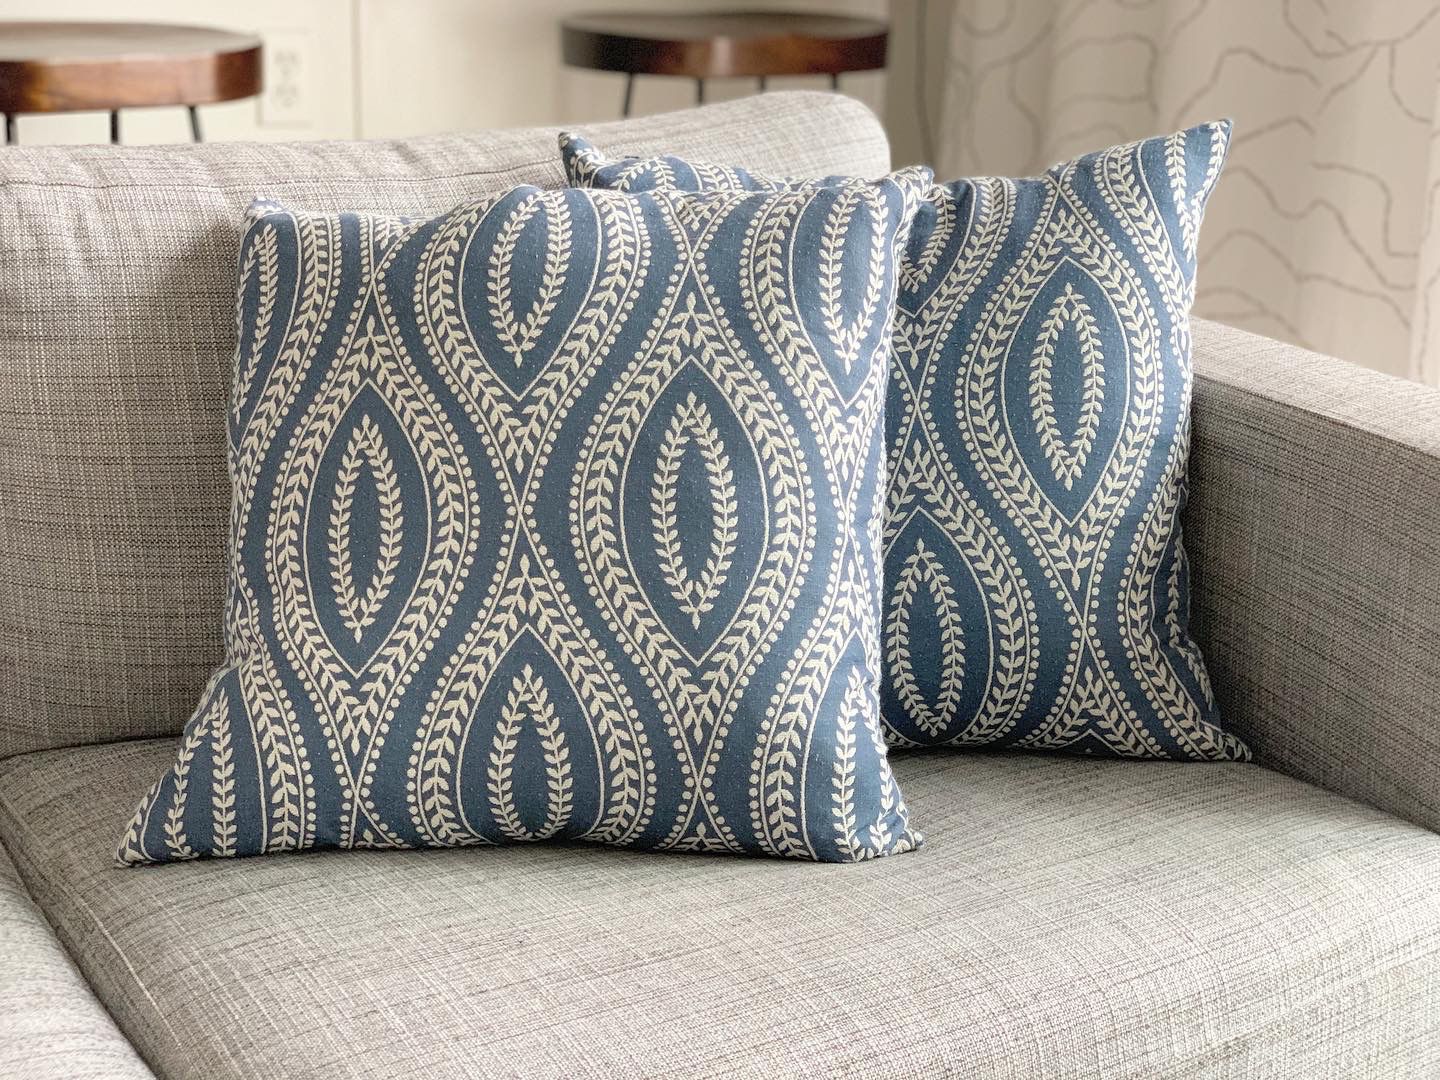 (2) Blue & White throw pillows